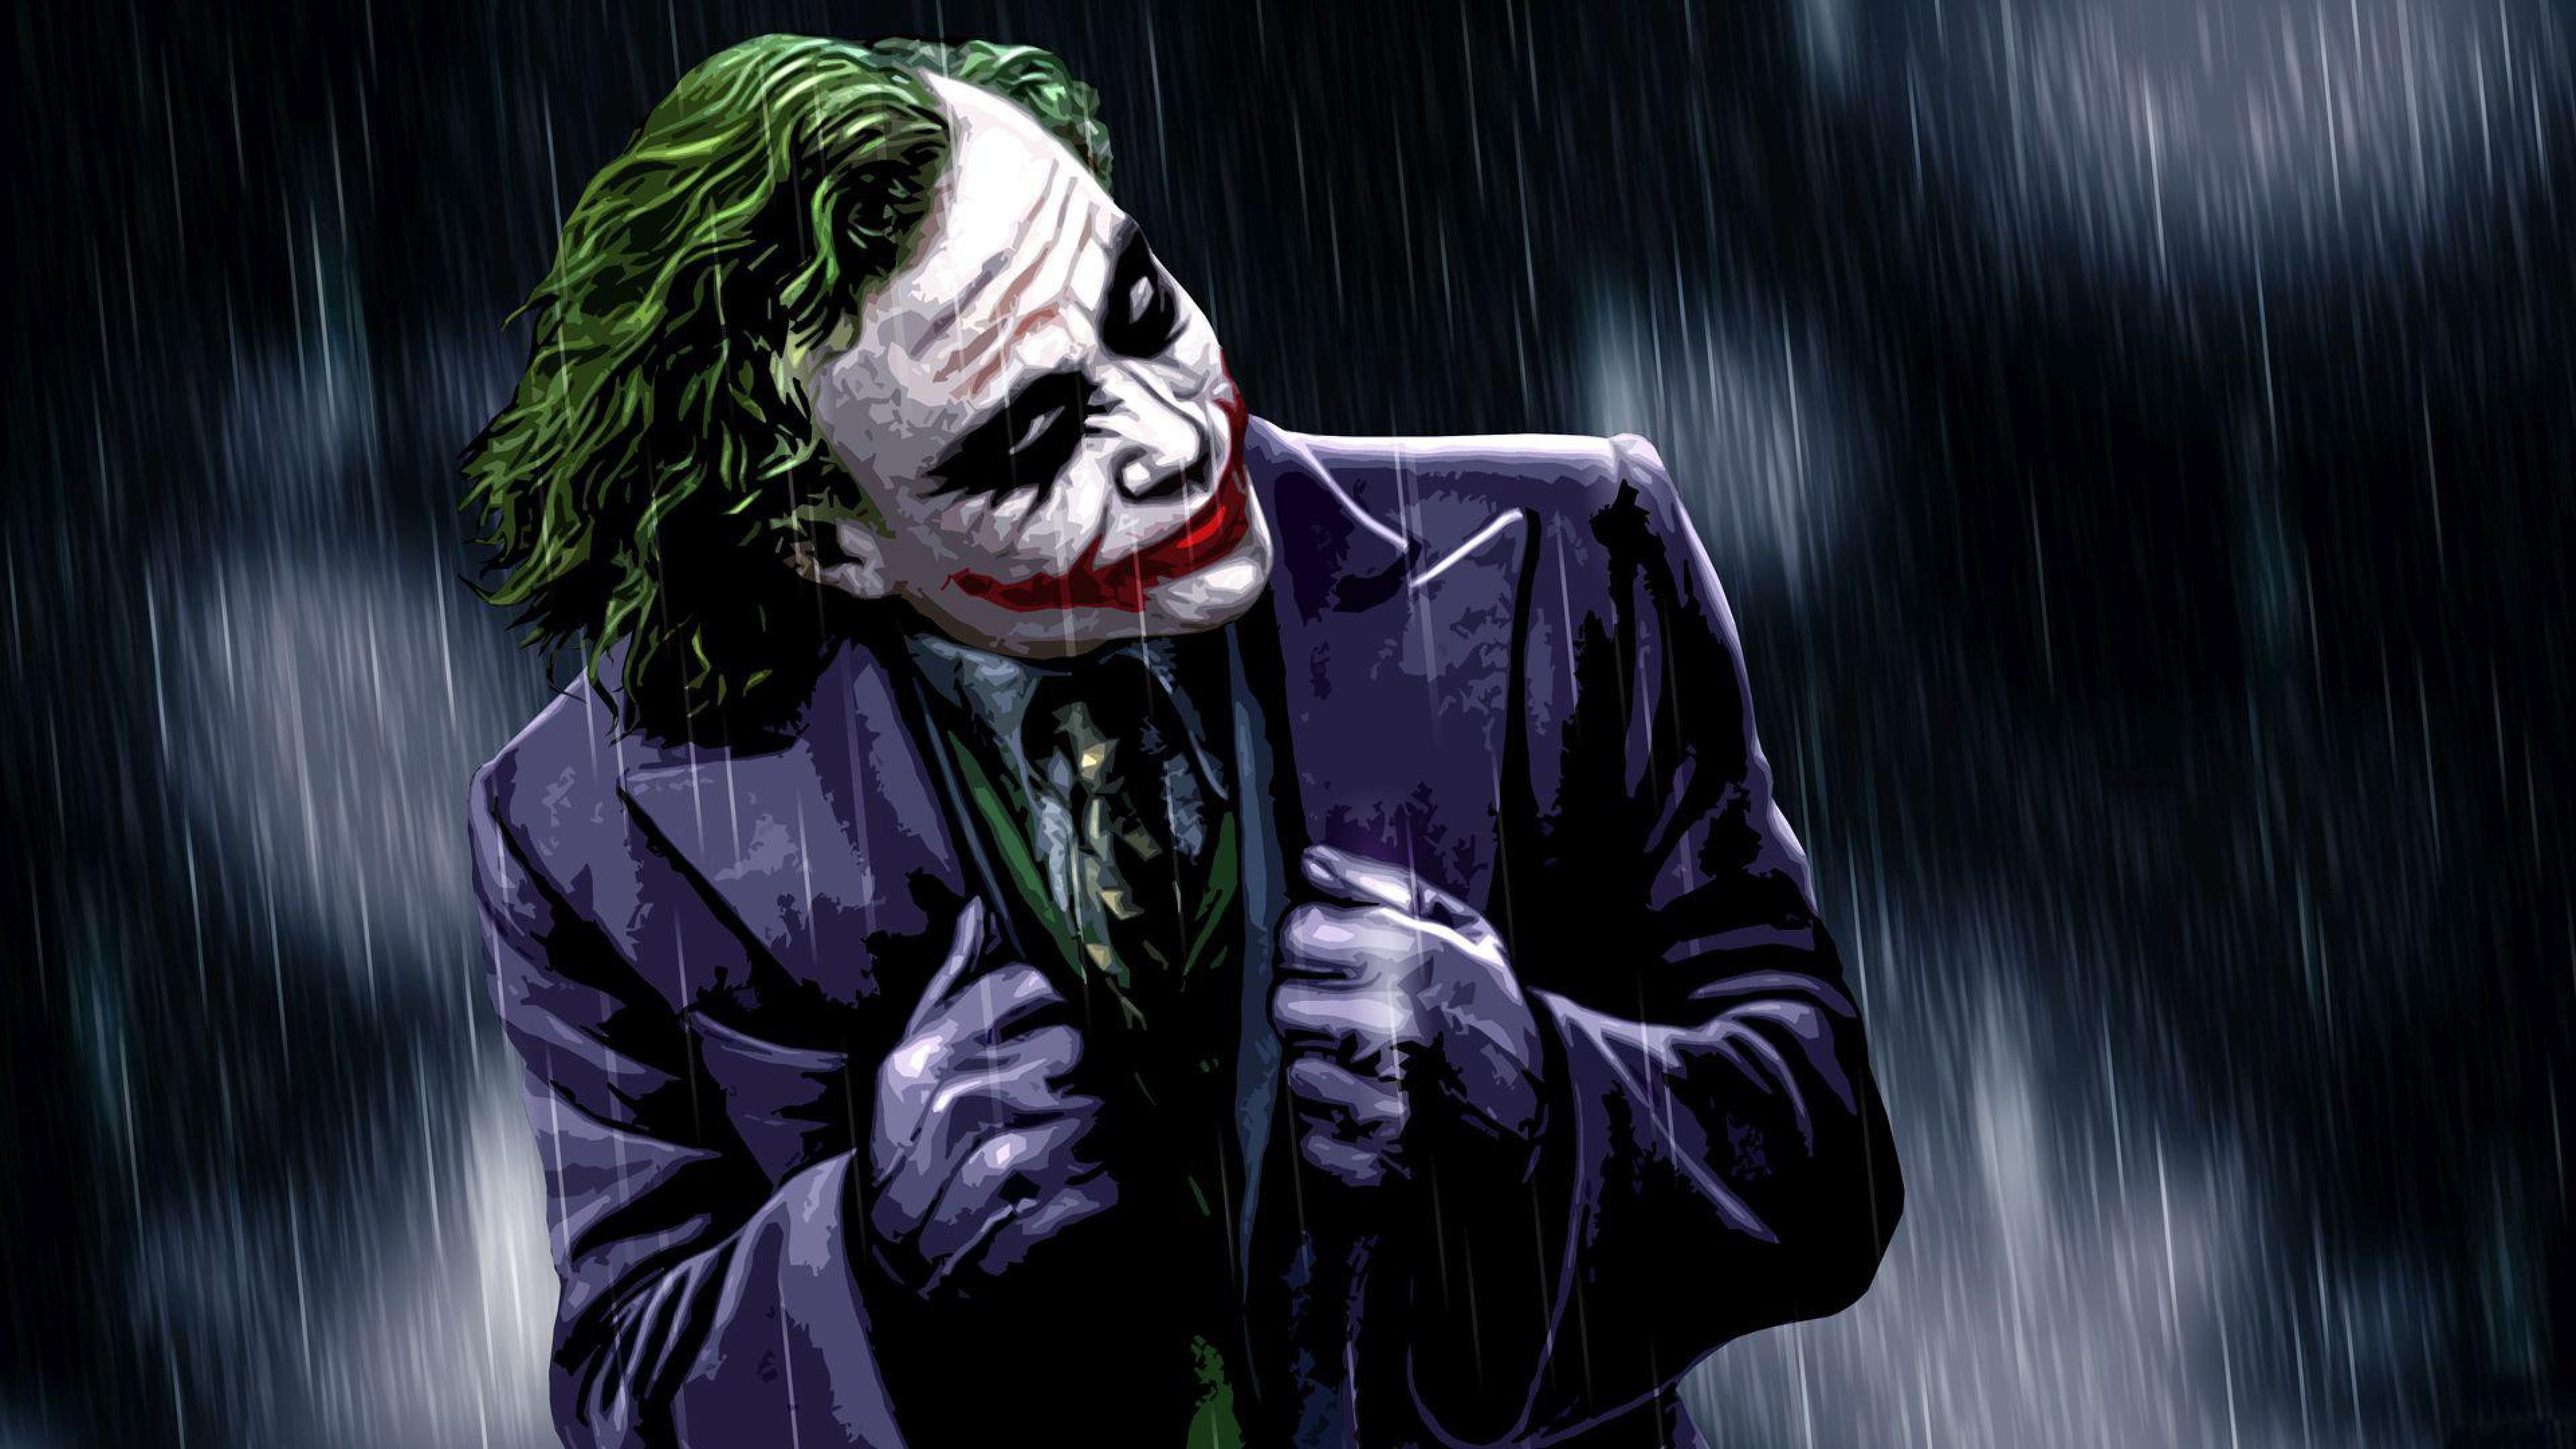 3840 x 2160 · jpeg - The Joker Supervillain, HD Superheroes, 4k Wallpapers, Images ...